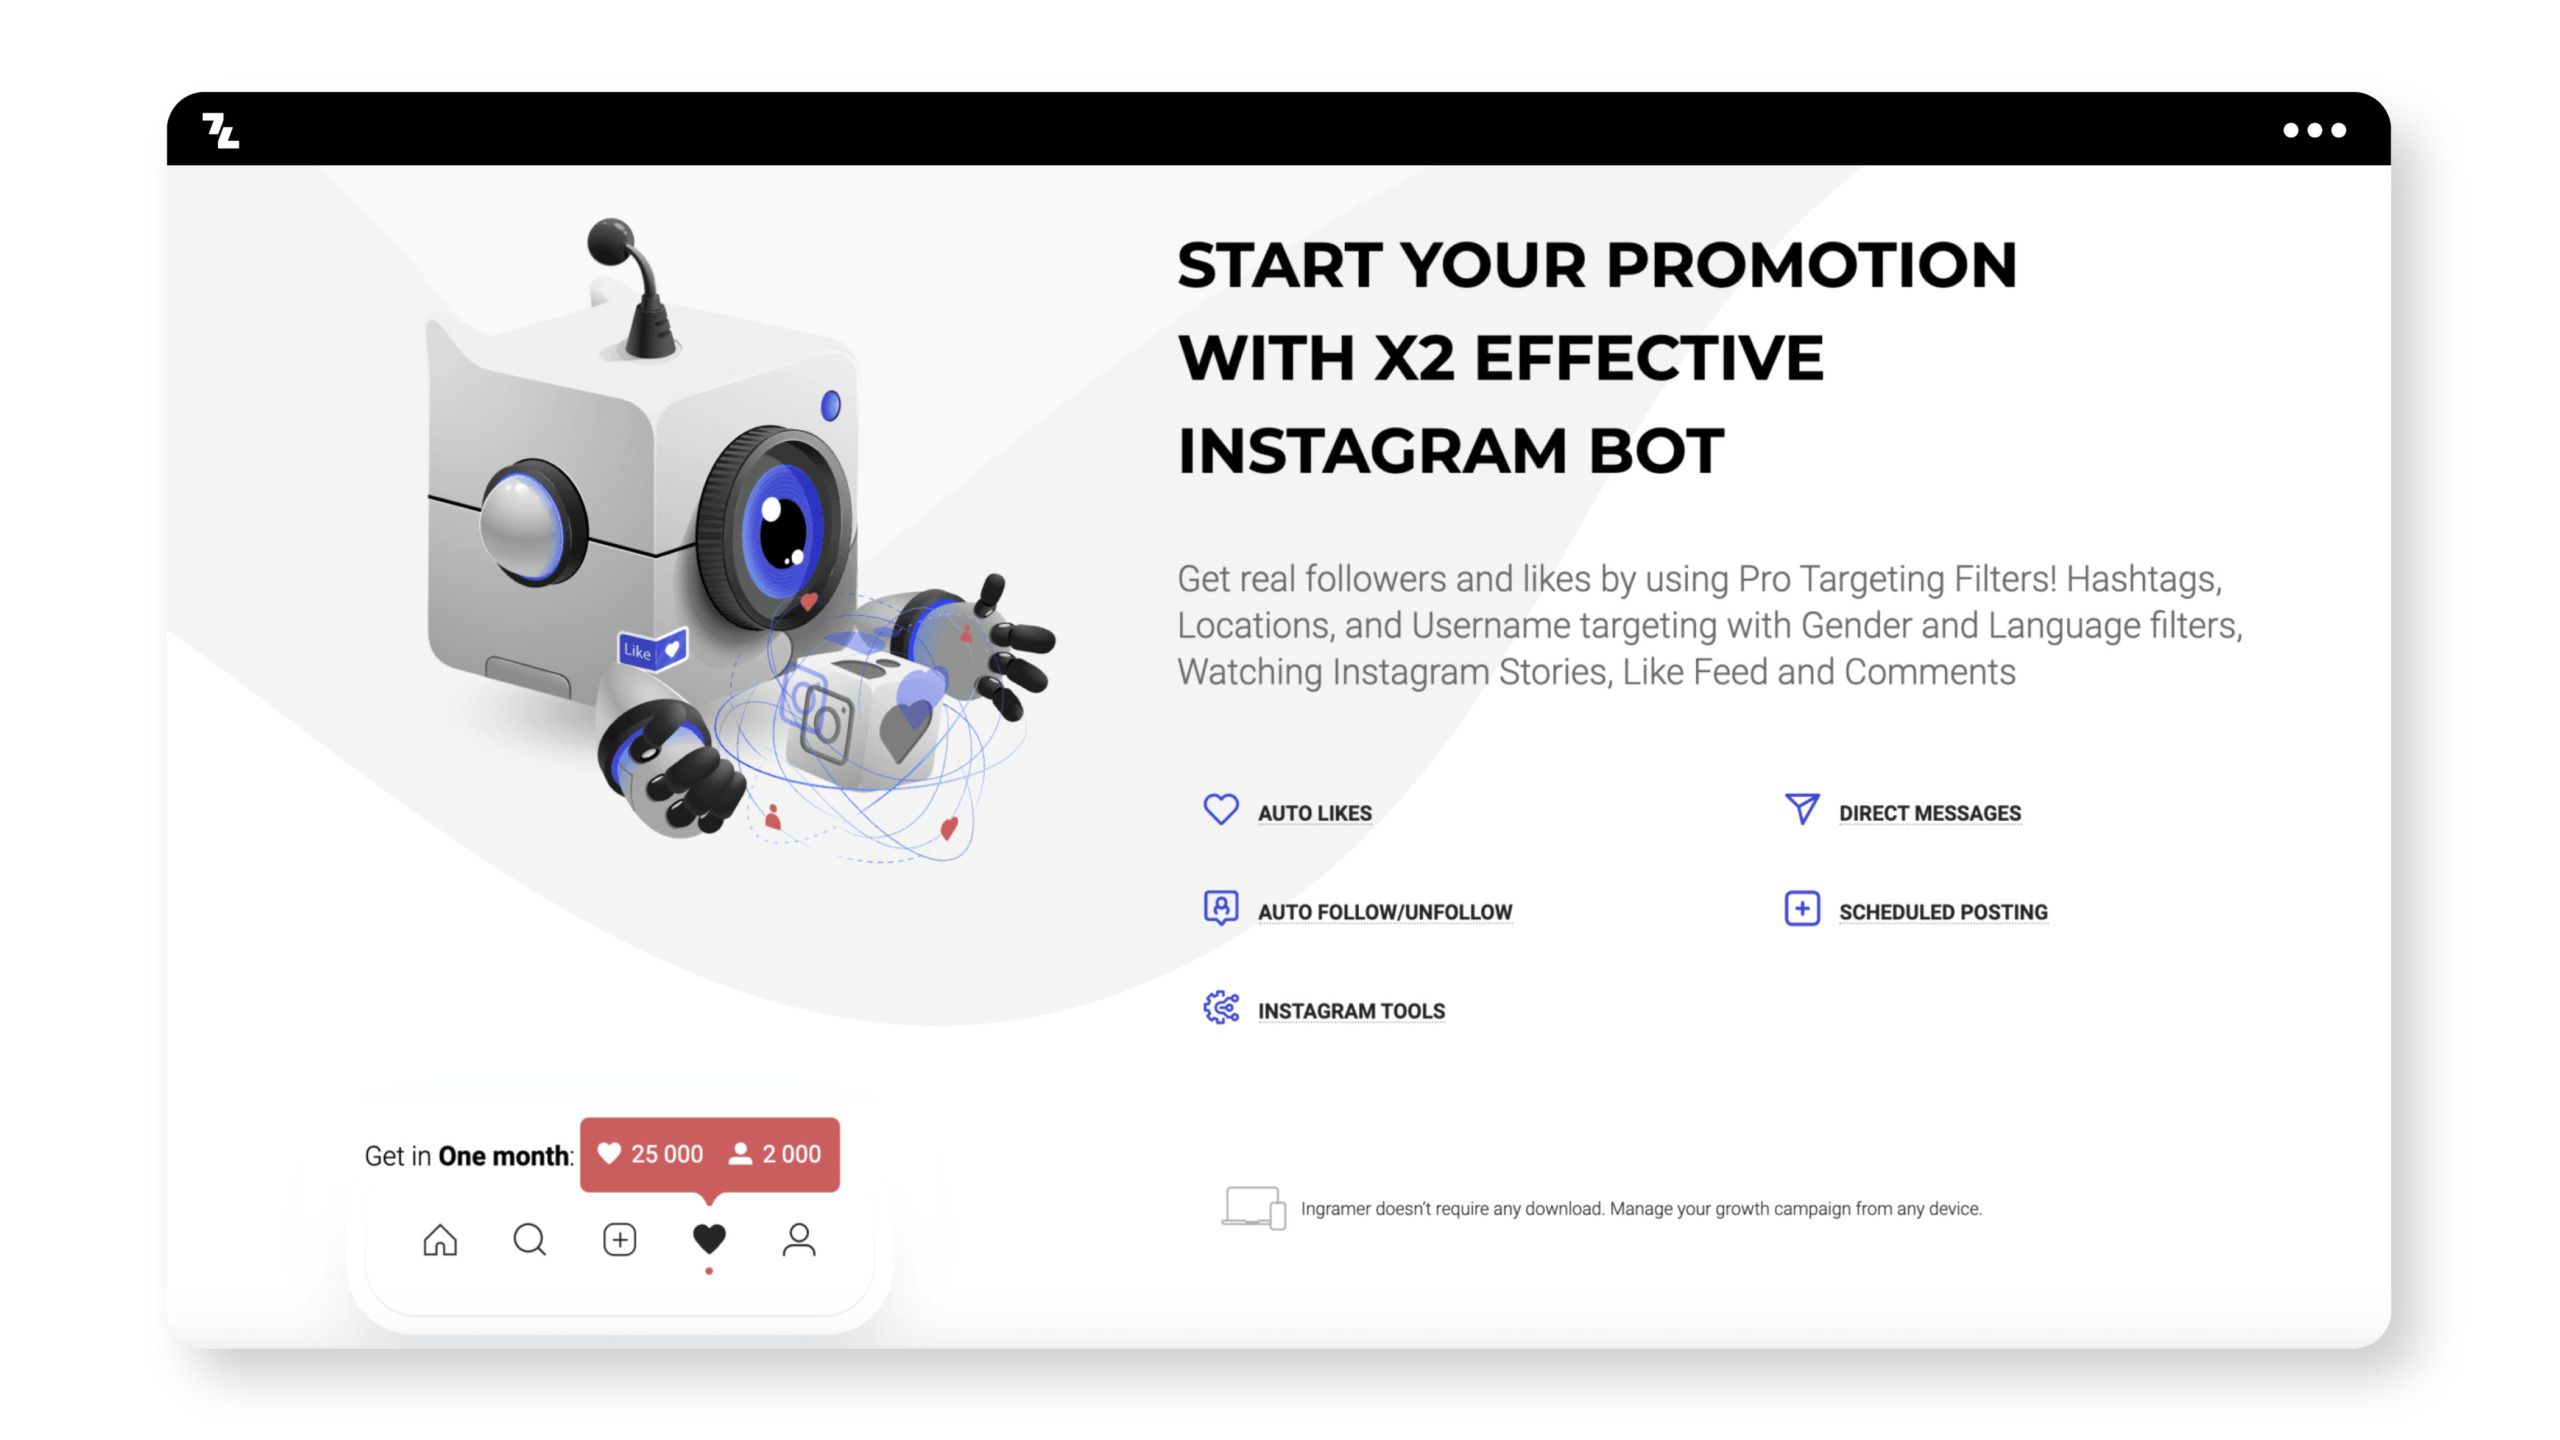 Beginnen Sie Ihre Werbung mit einem Top-Instagram-Bot für effektive Likes und Follower.